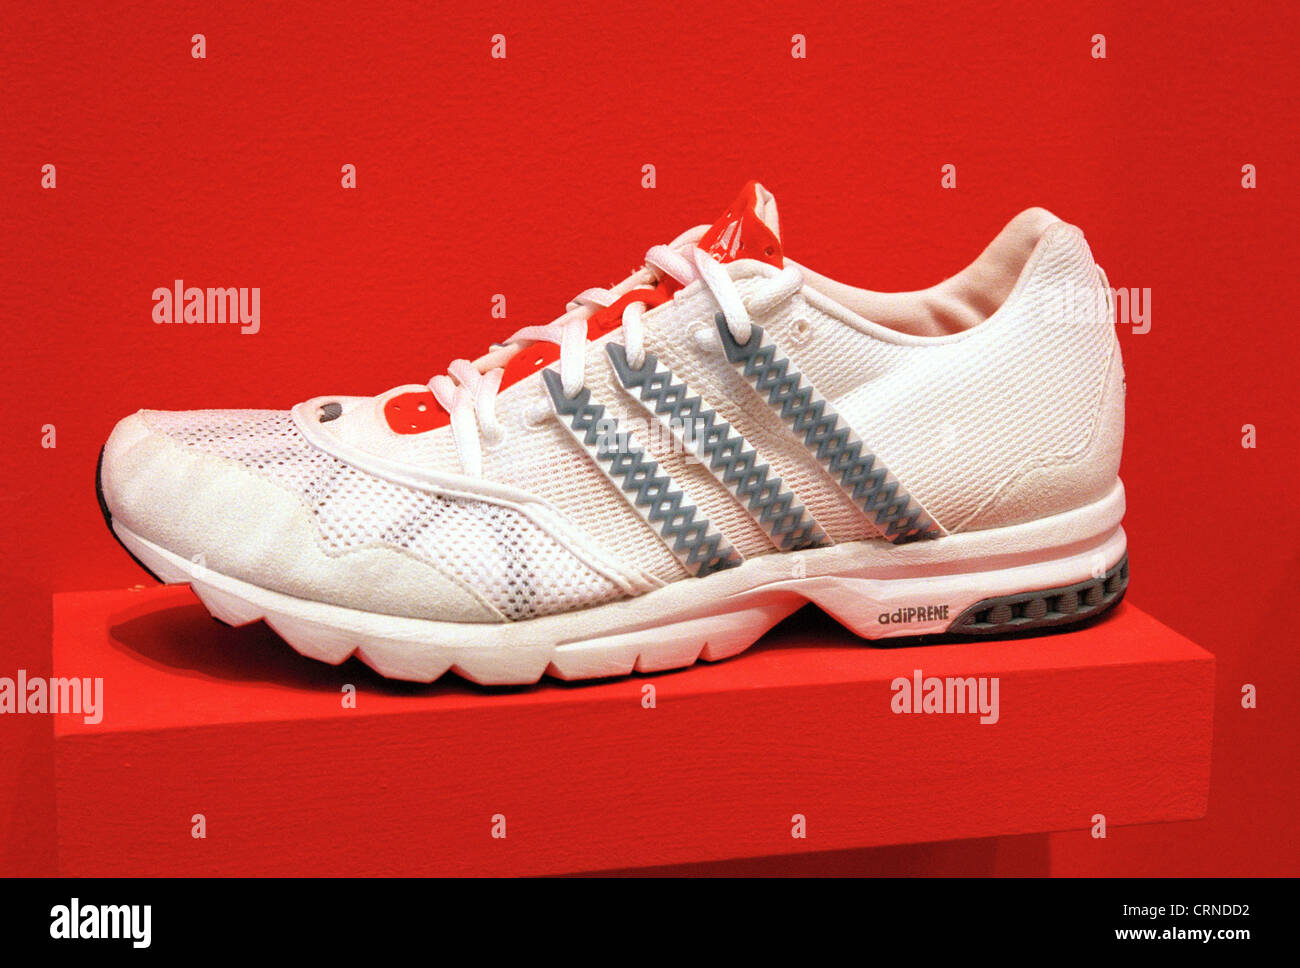 Adidas laufschuhe -Fotos und -Bildmaterial in hoher Auflösung – Alamy